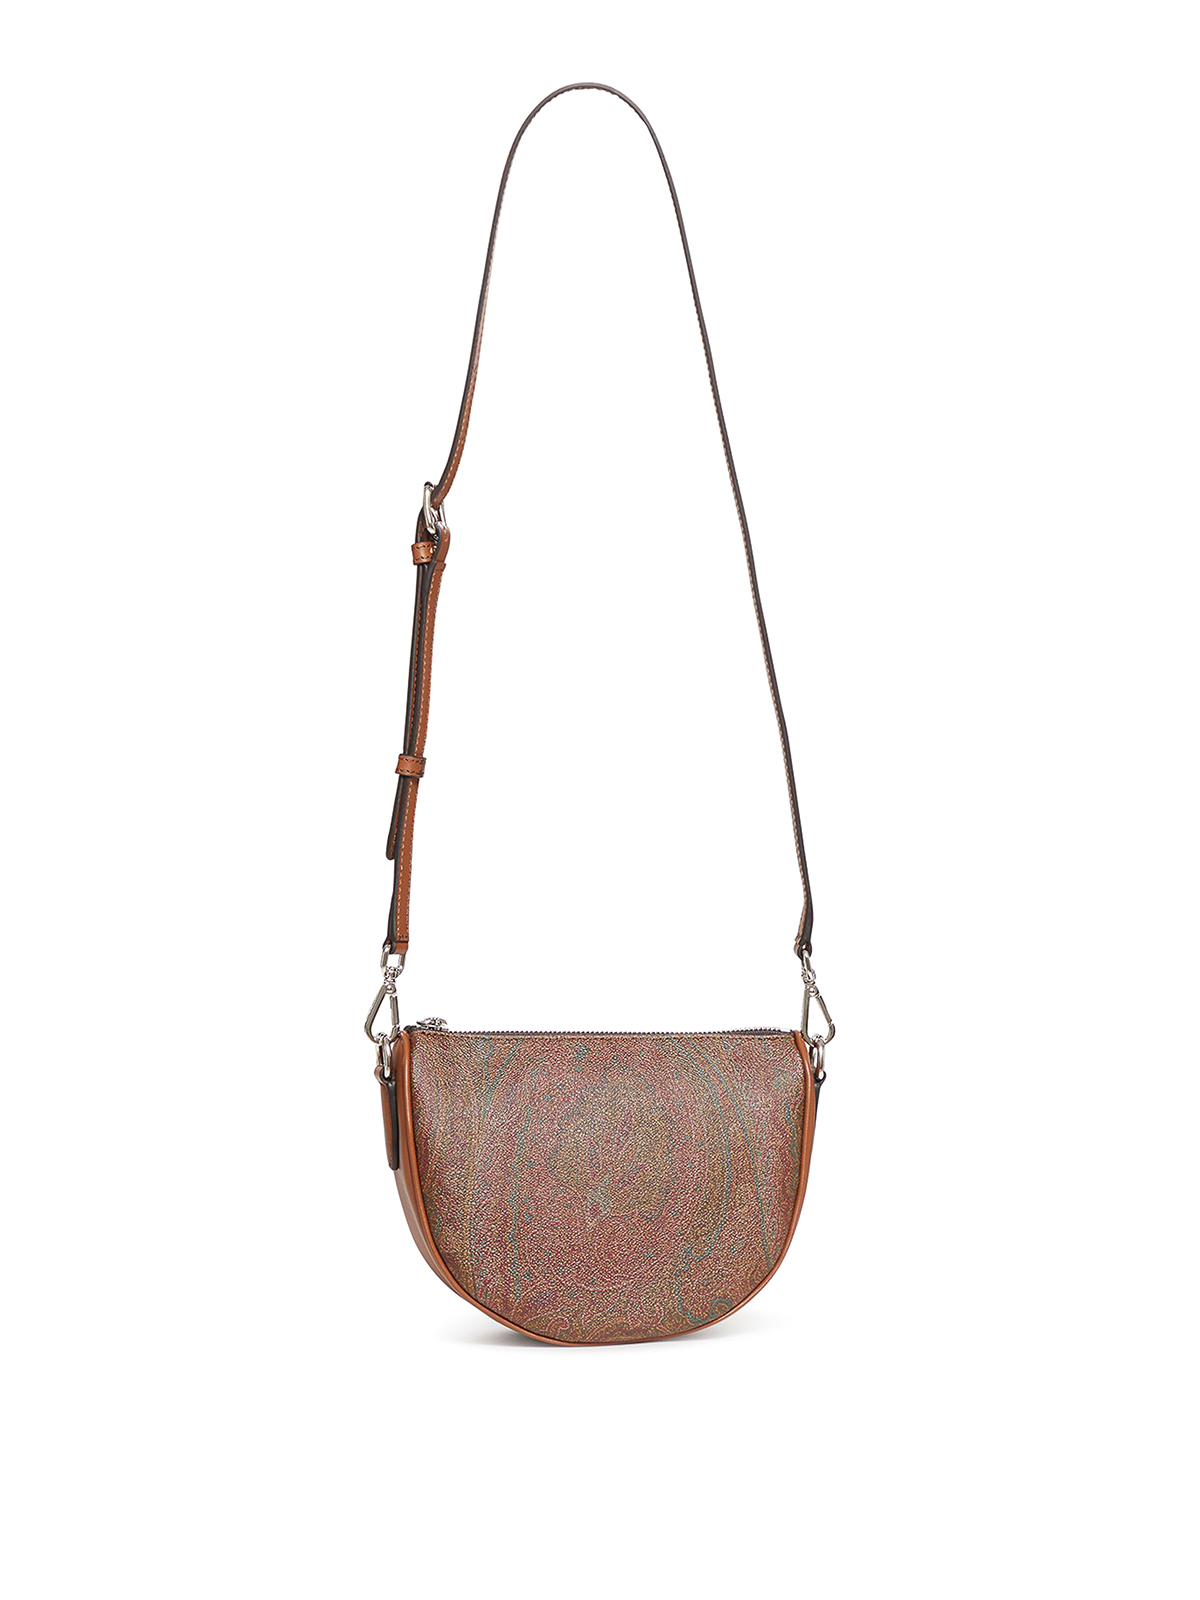 ETRO Leather shoulder bag, Sale up to 70% off